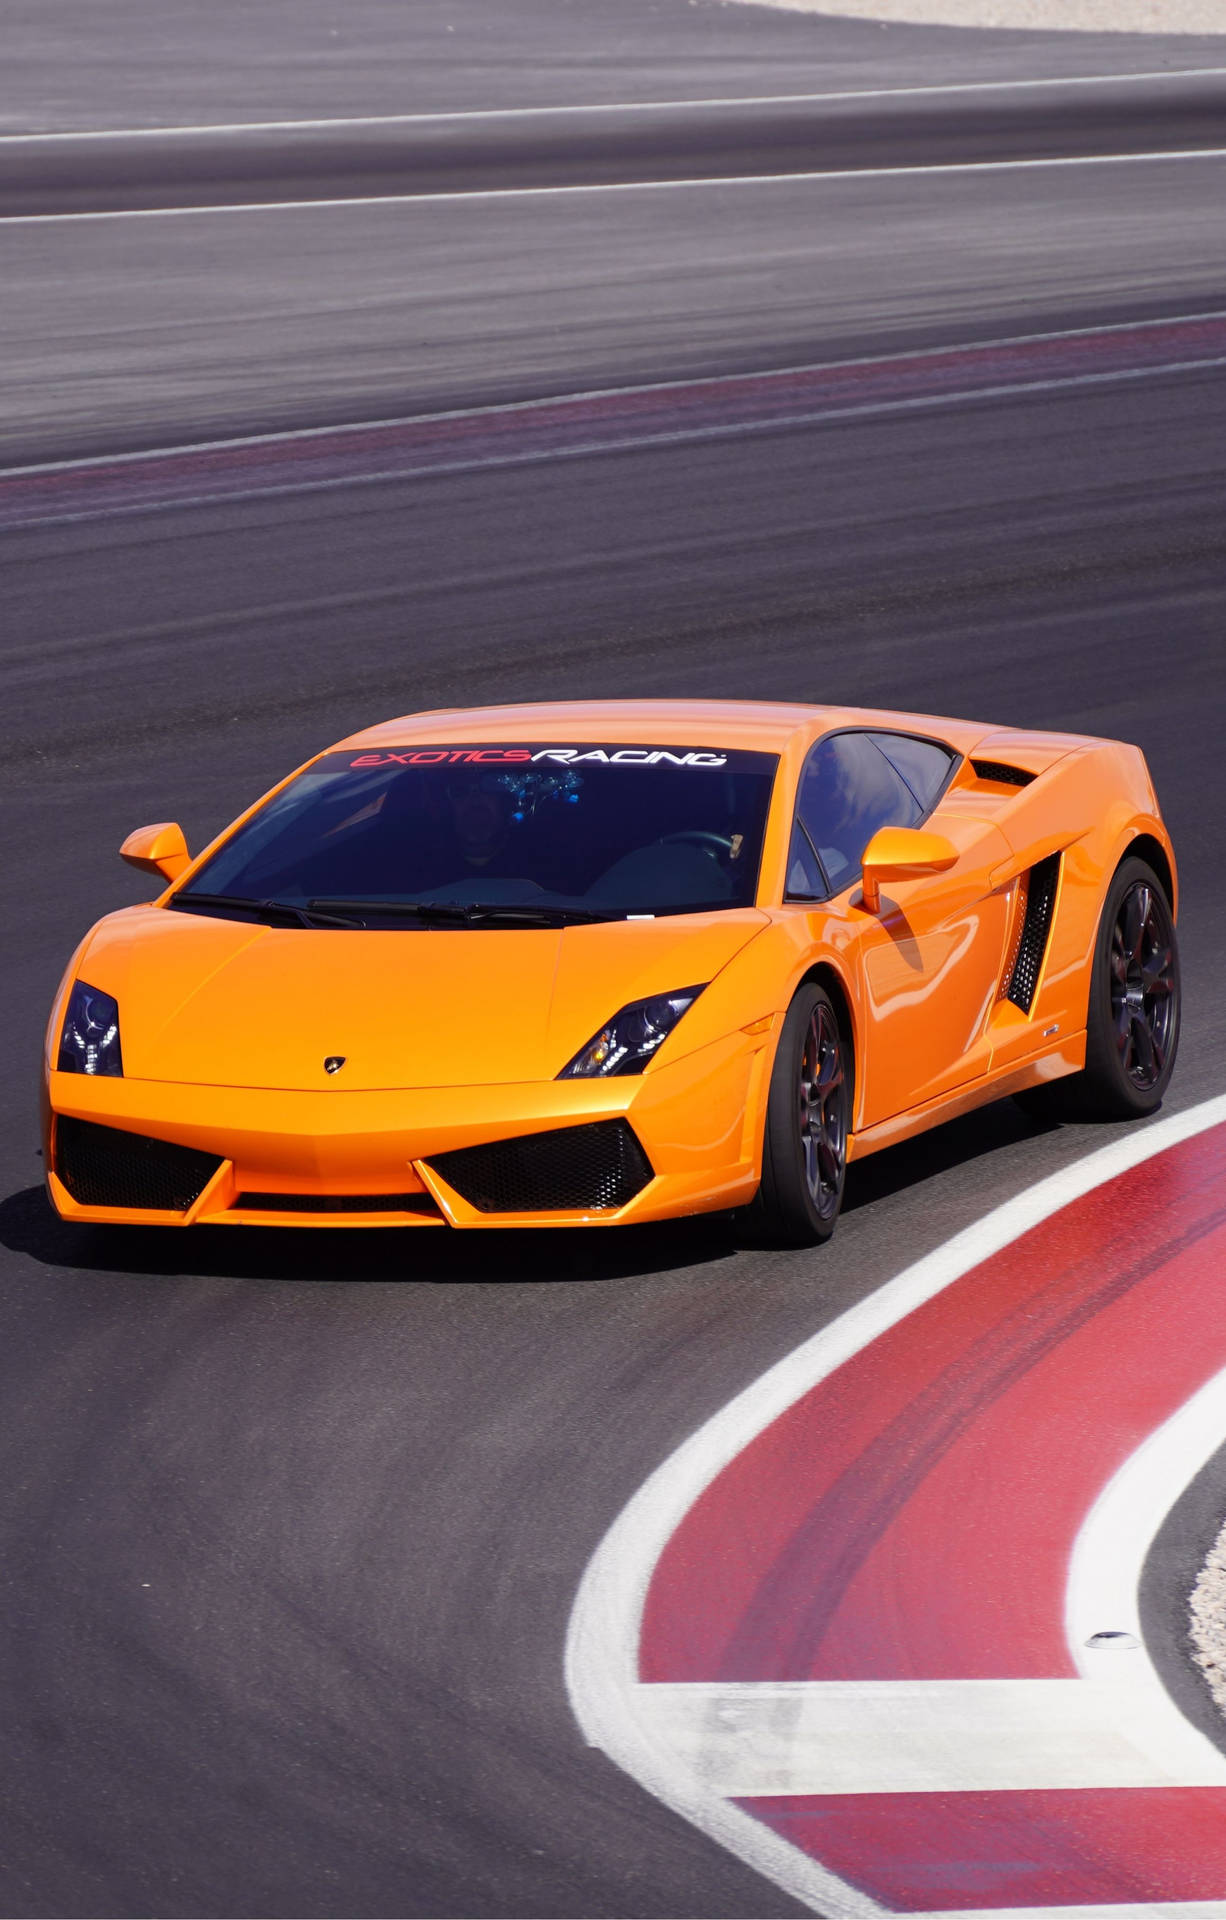 Iphonede Lamborghini Con Resolución 4k Y Elegante Acabado De Vidrio. Fondo de pantalla